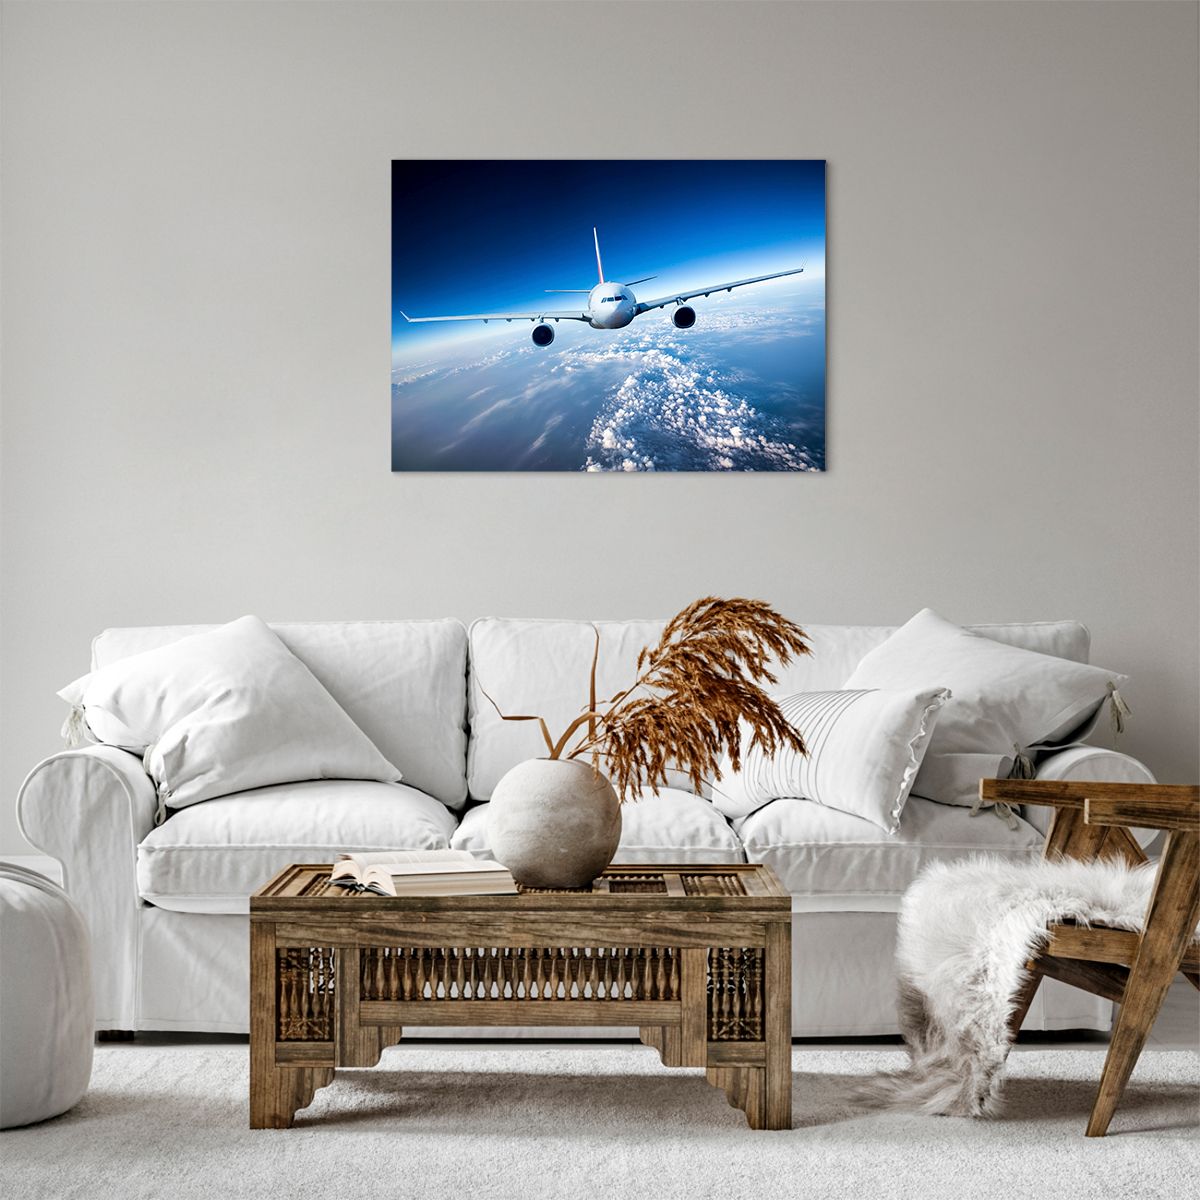 Bild auf Leinwand Ebene, Bild auf Leinwand Flugzeug, Bild auf Leinwand Reise, Bild auf Leinwand Himmel, Bild auf Leinwand Wolken